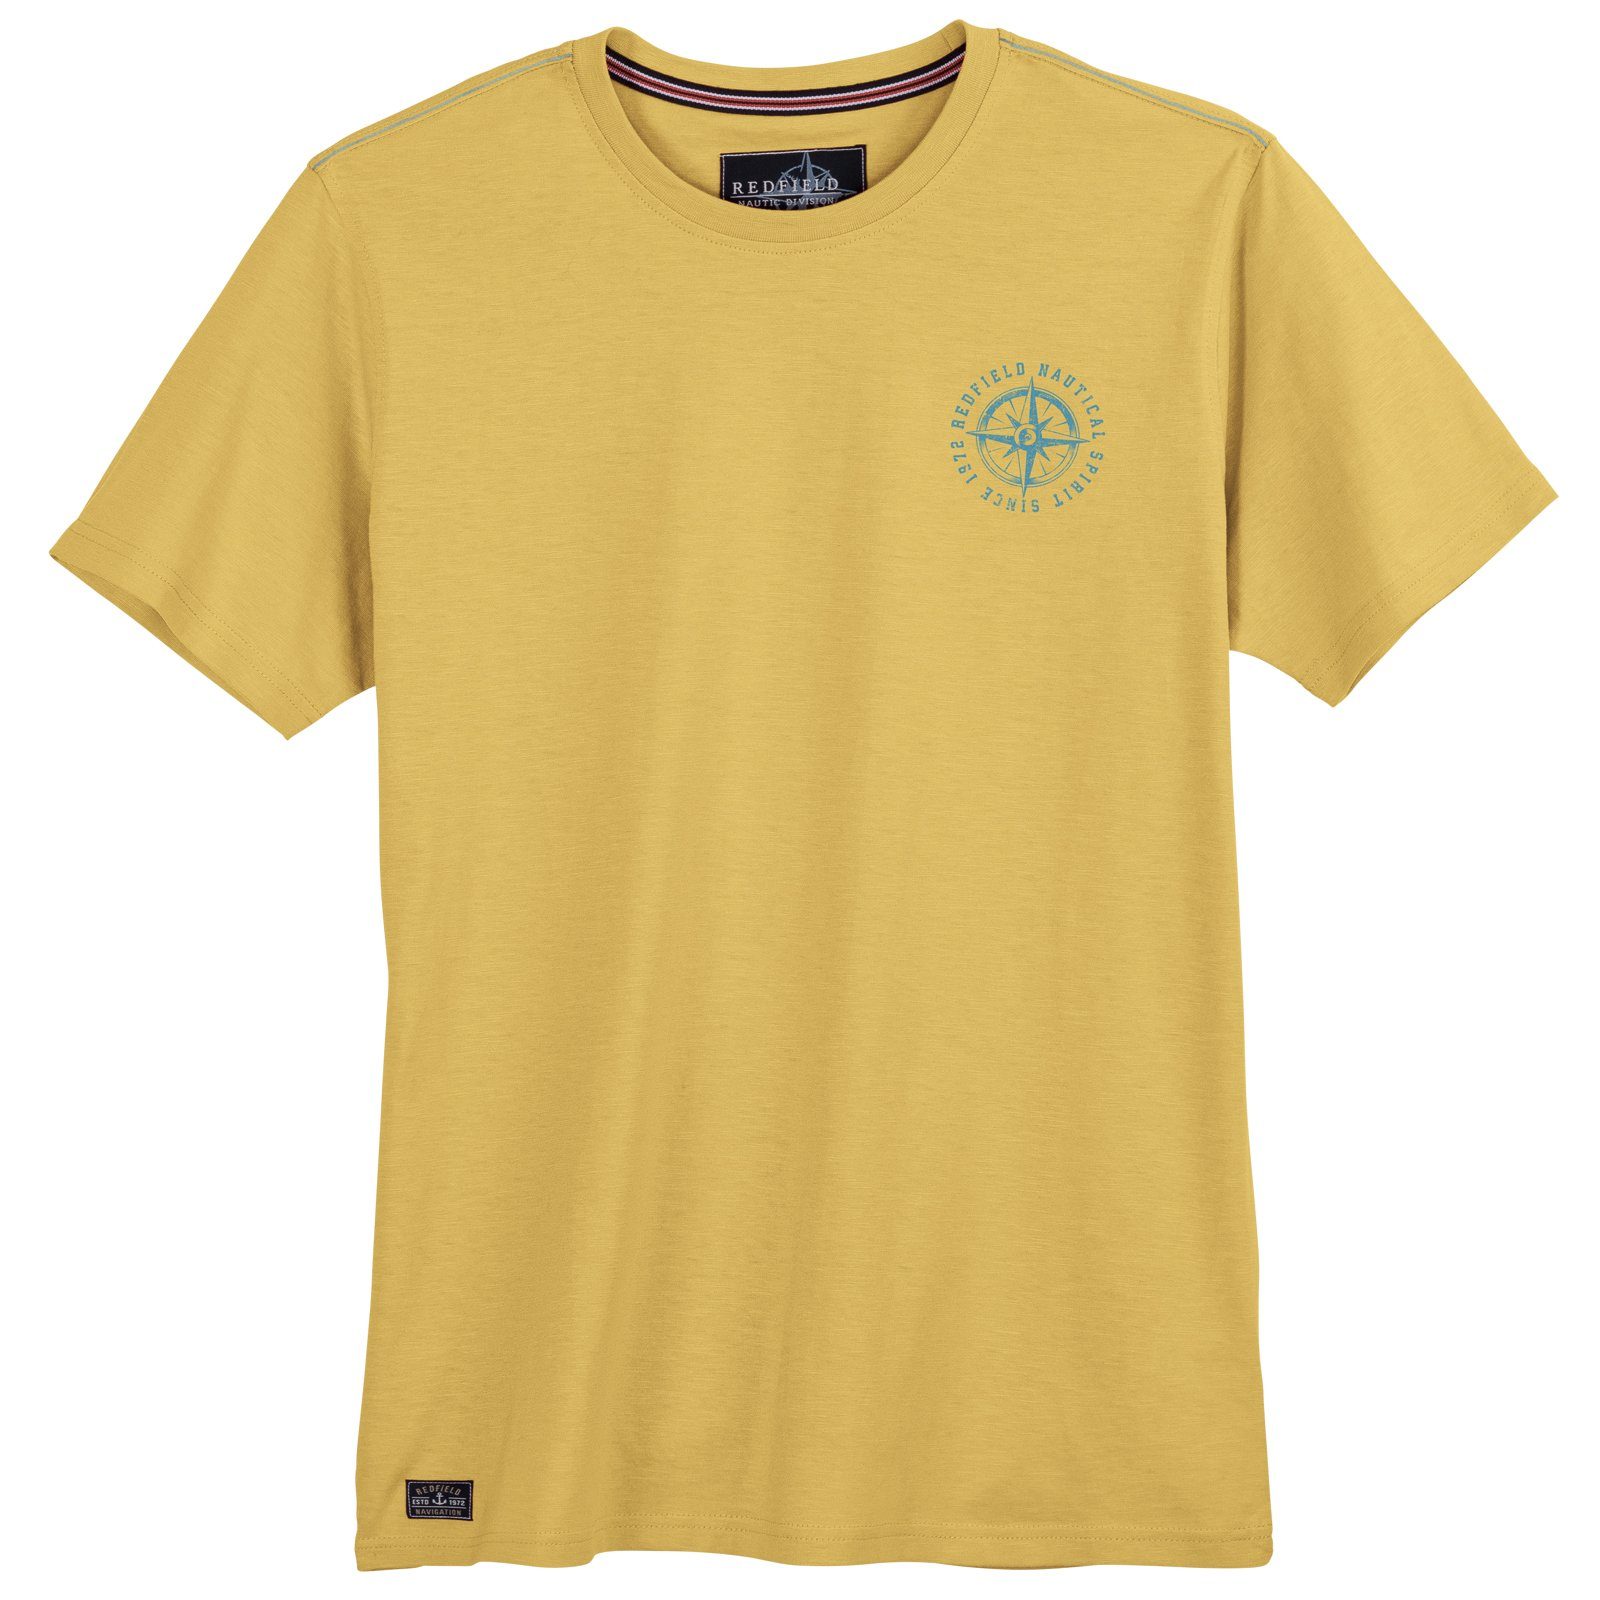 redfield Rundhalsshirt Große Größen Herren T-Shirt gelb kleiner Brustprint Redfield